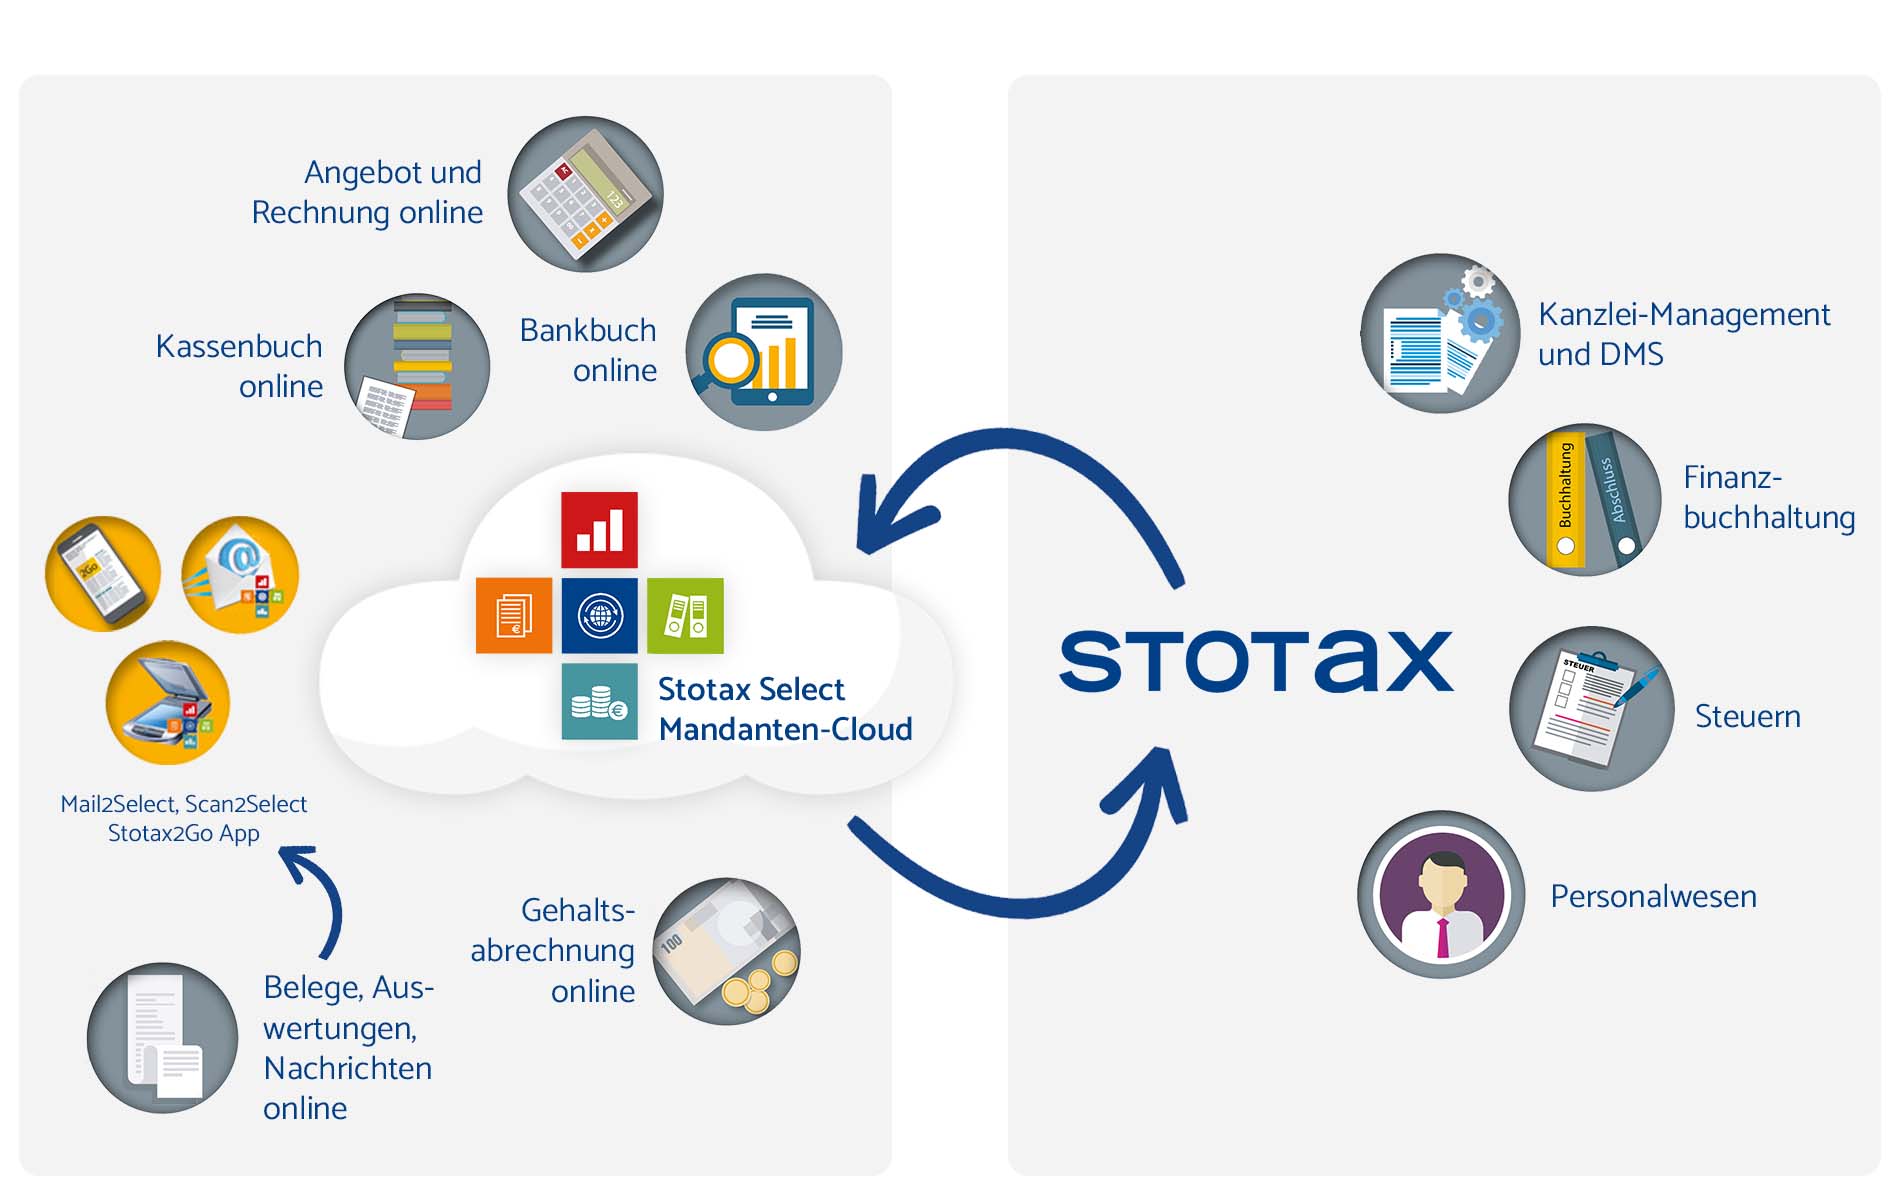 Stotax Select als Ergänzung für die Stotax-Suite